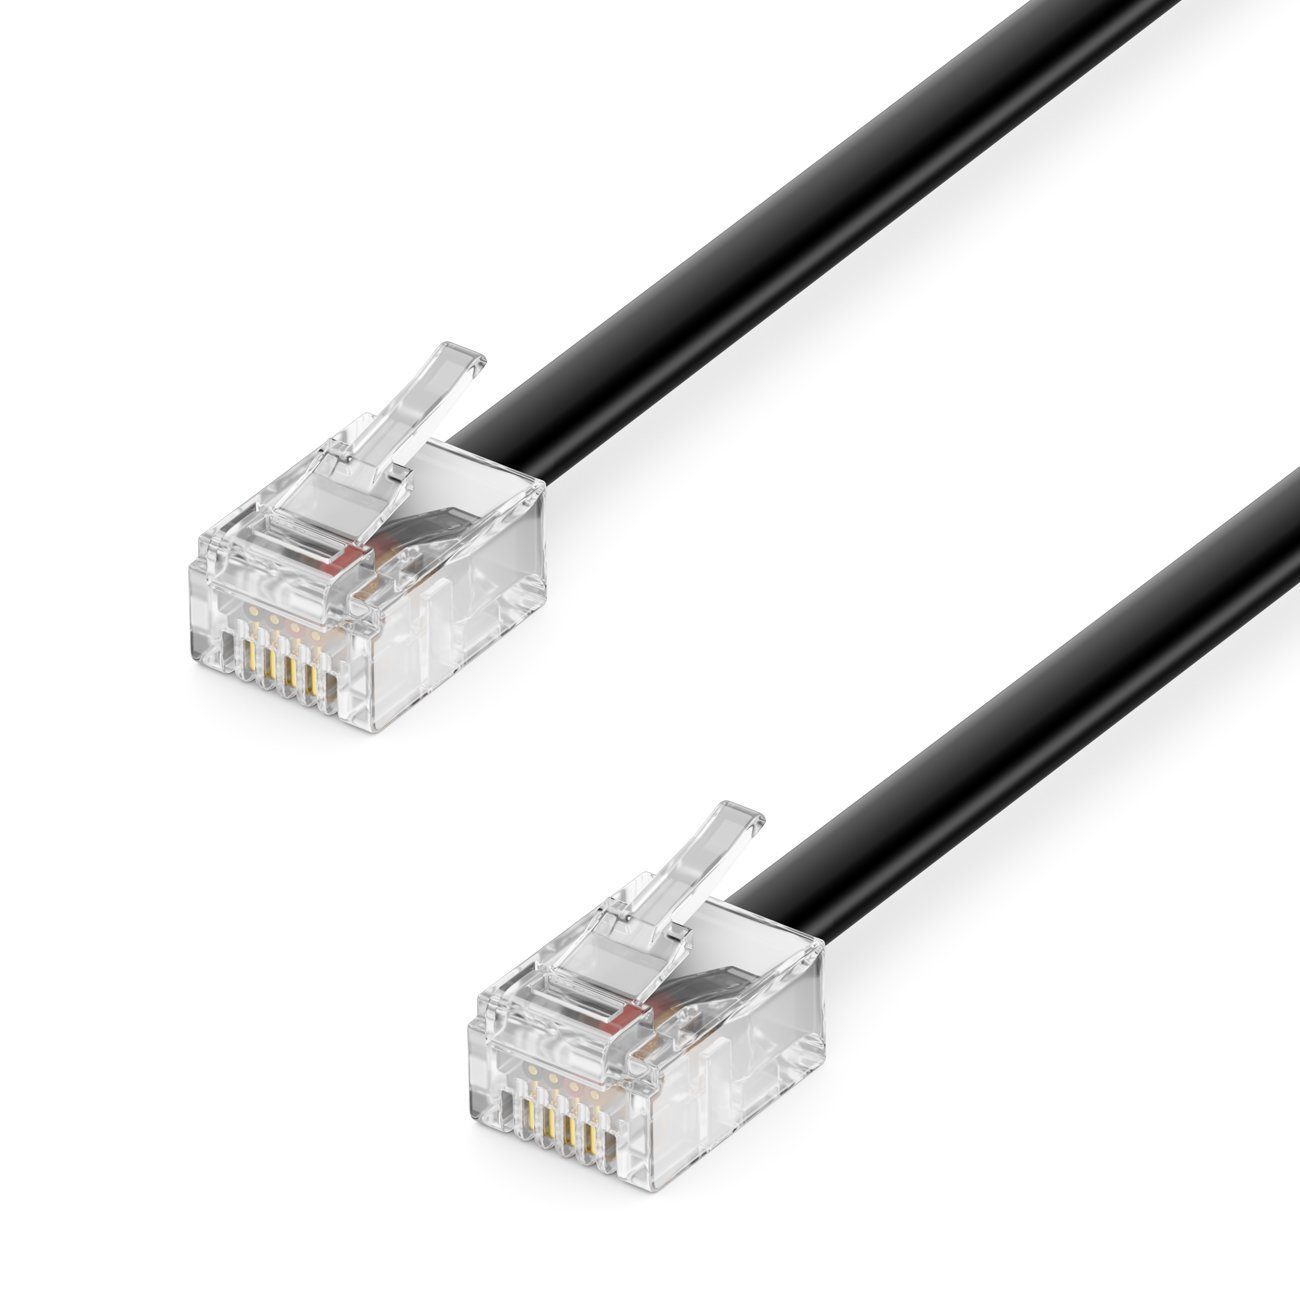 Kabel ohne Stecker 4m und IEC Anschluss weiblich kaufen